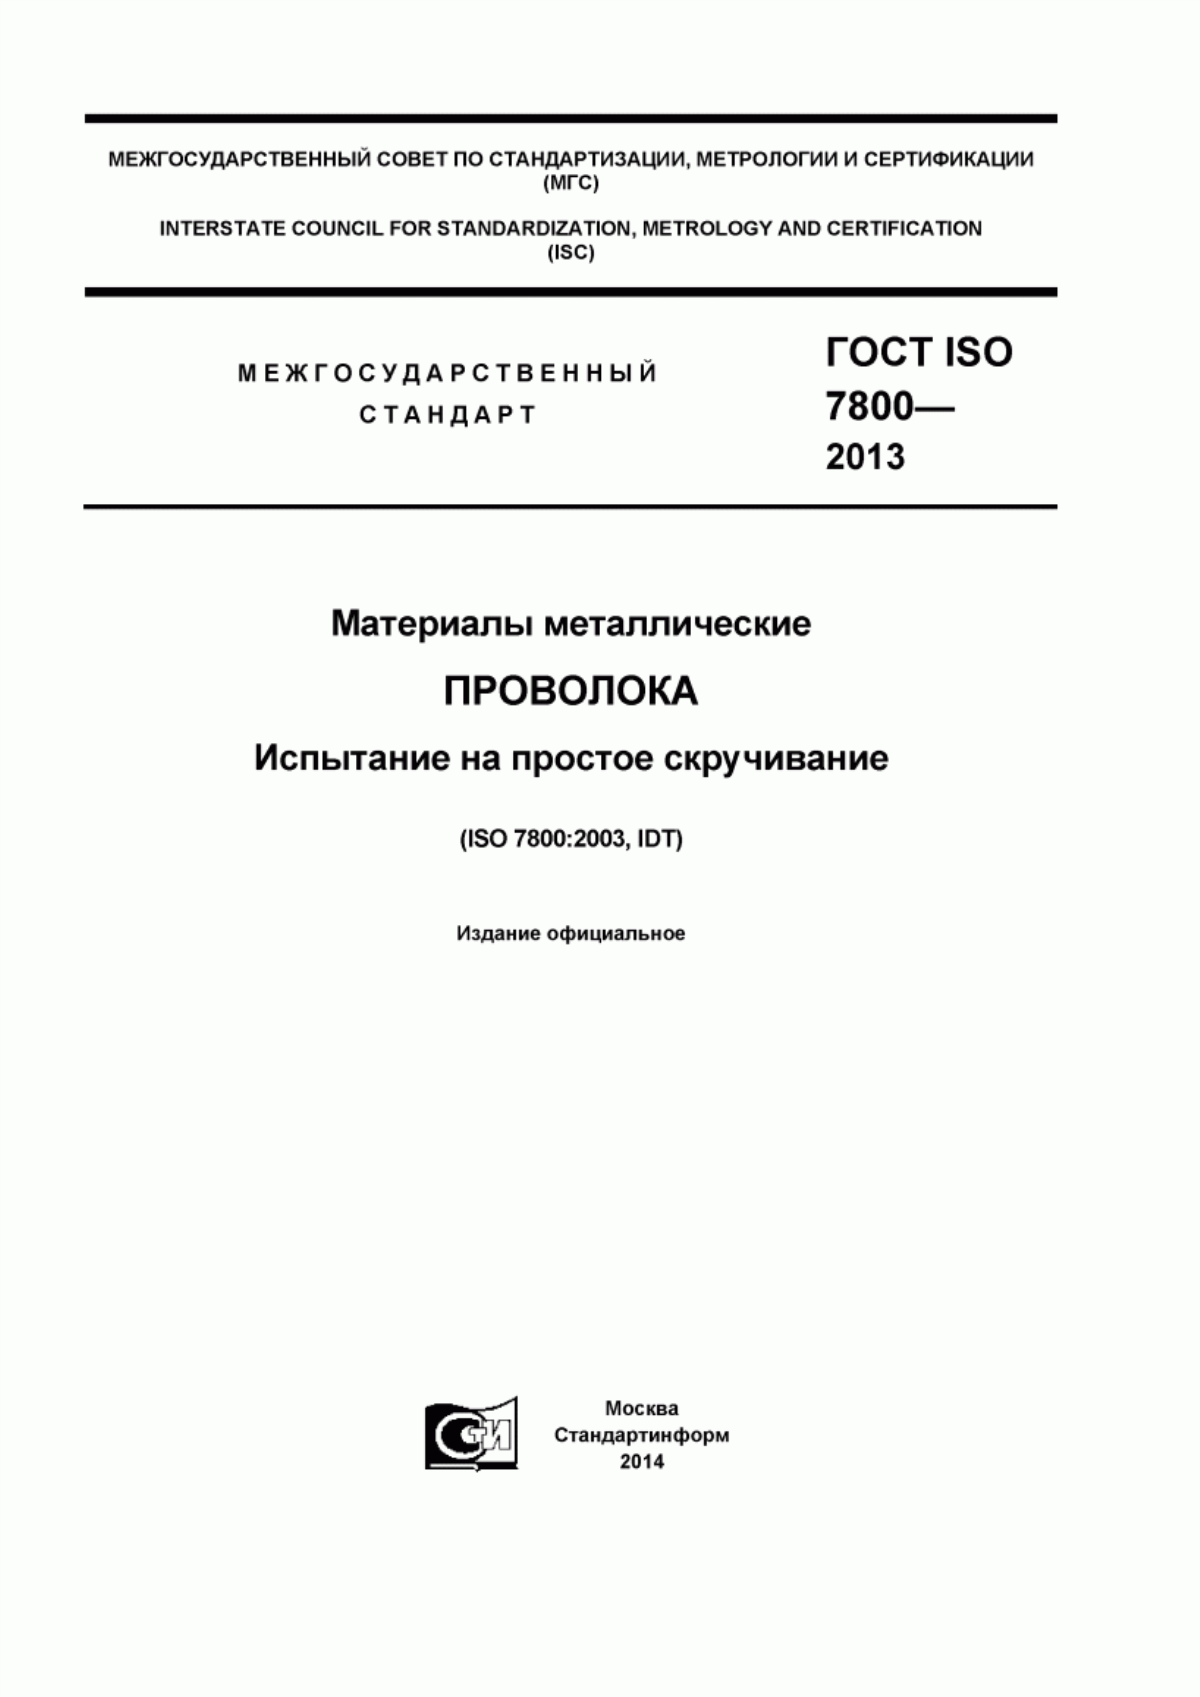 ГОСТ ISO 7800-2013 Материалы металлические. Проволока. Испытание на простое скручивание